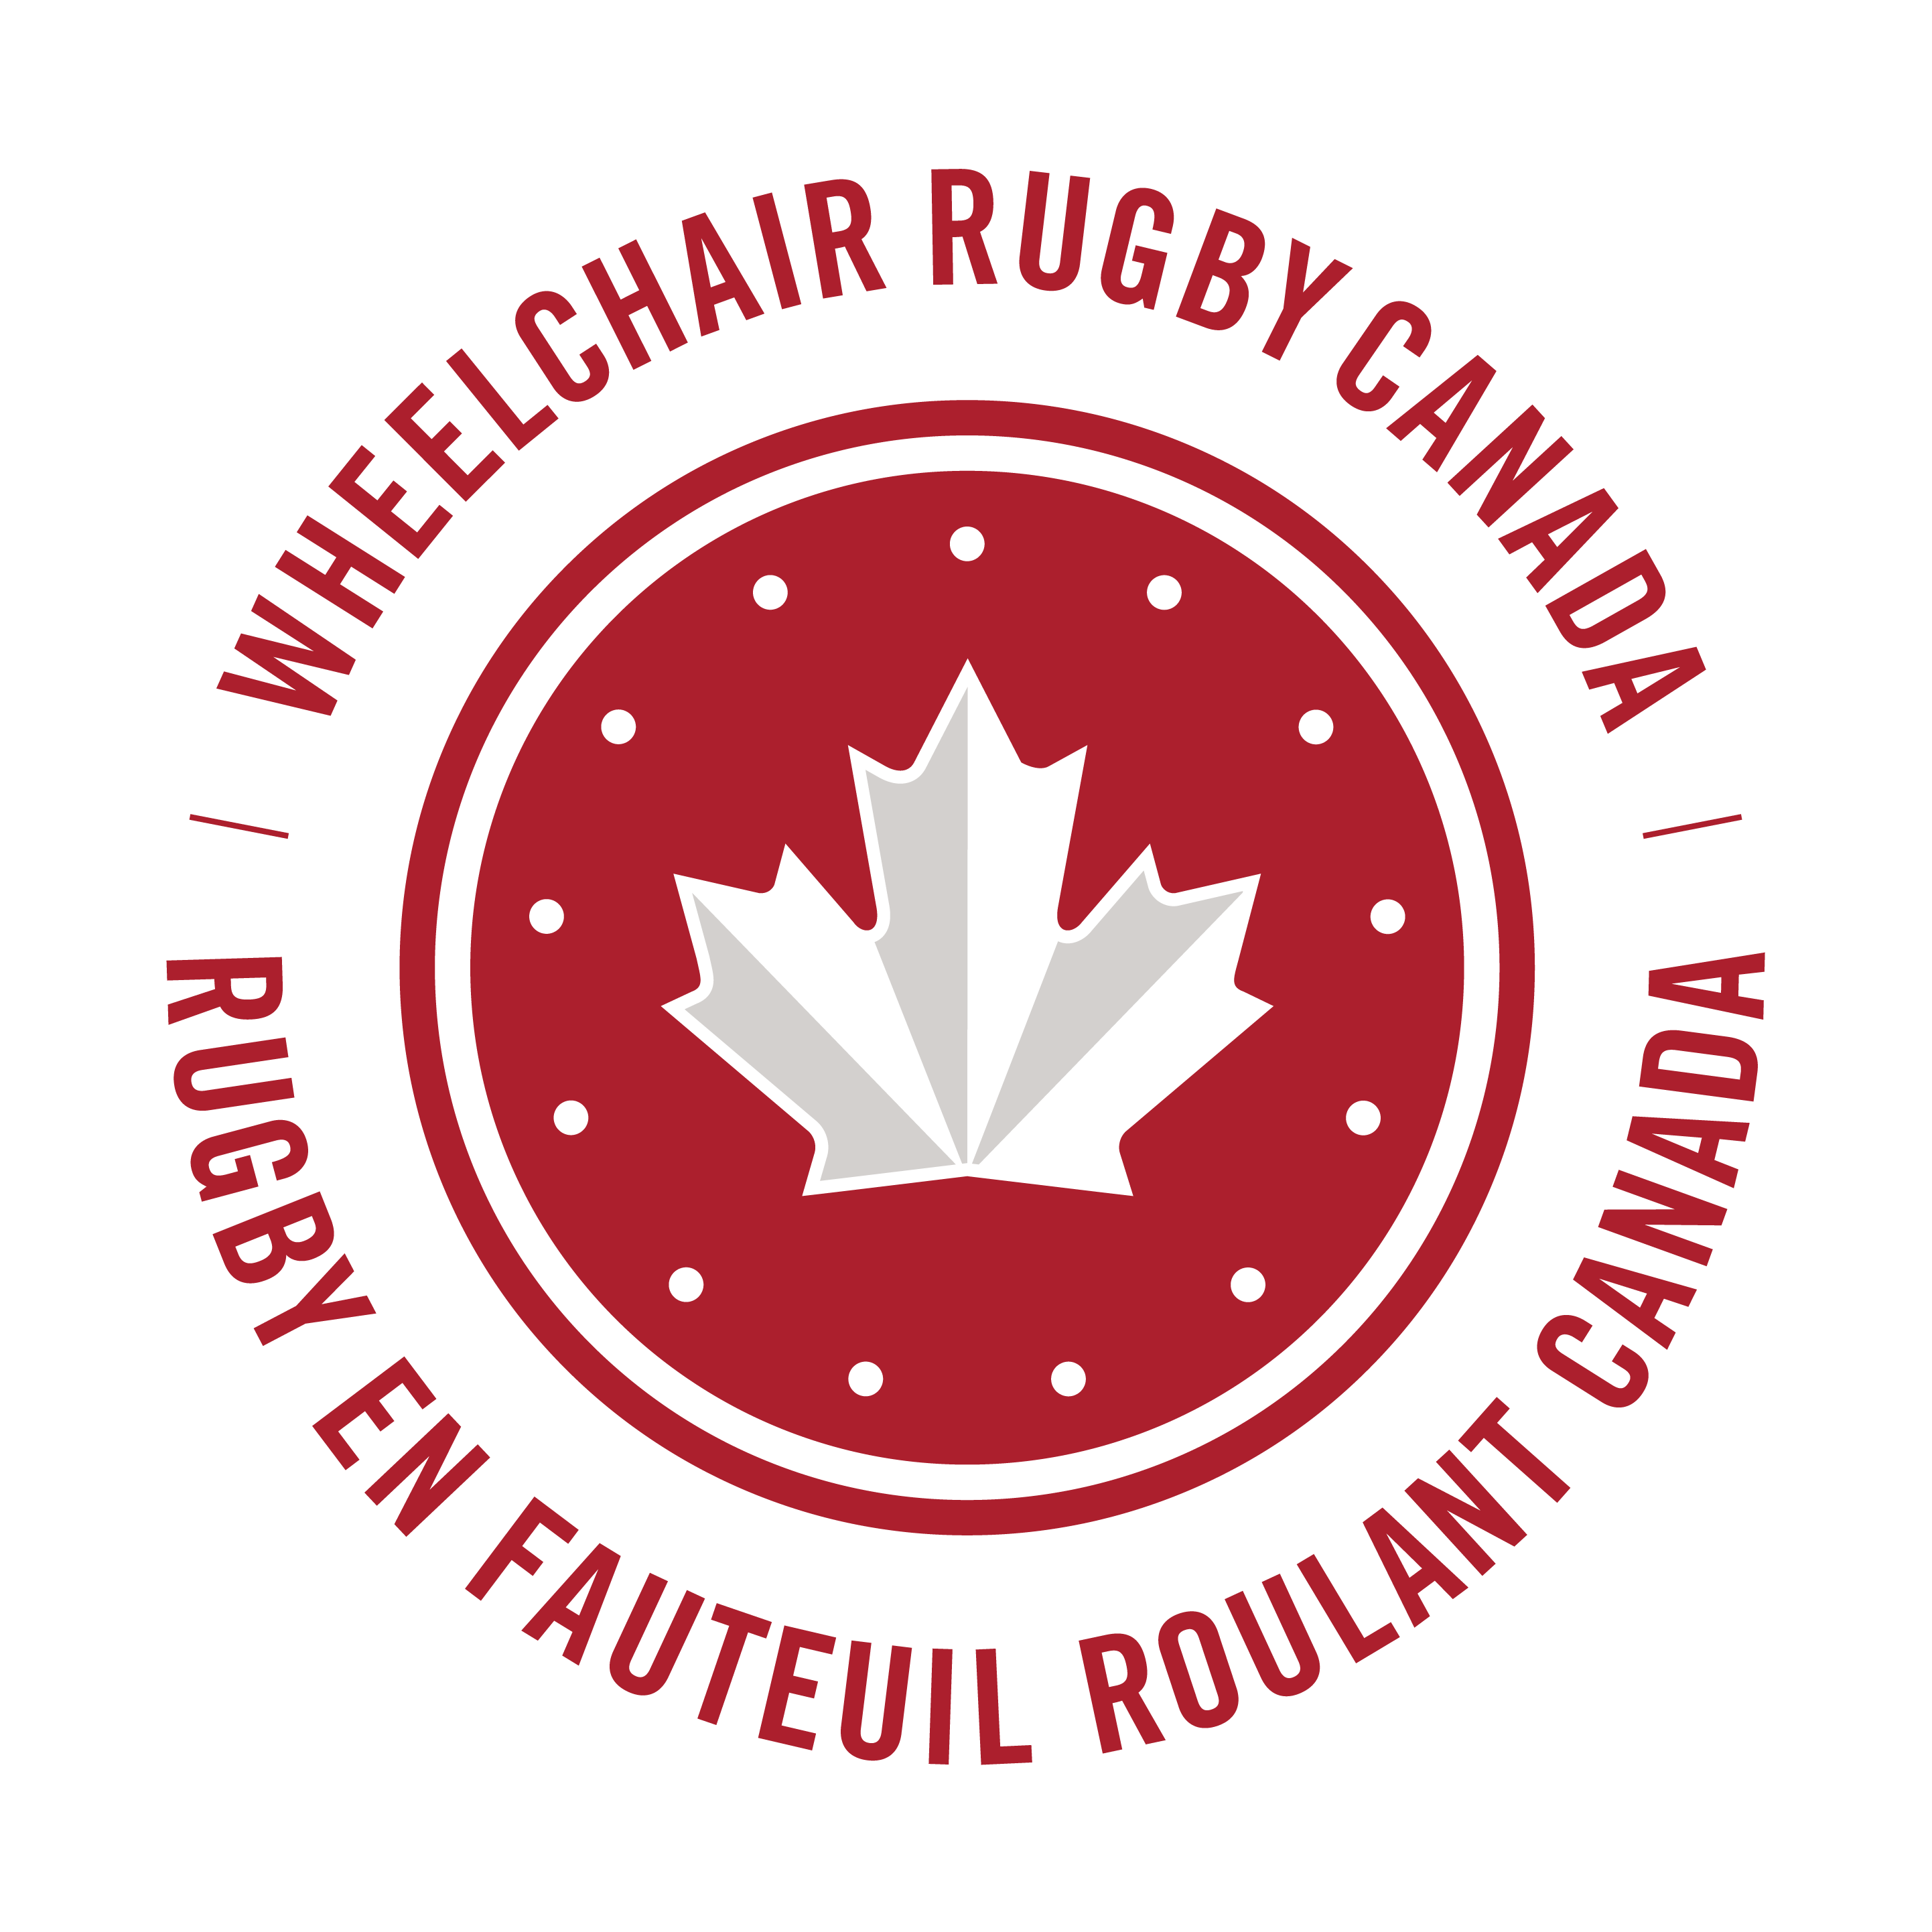 Wheelchair Rugby Canada logo